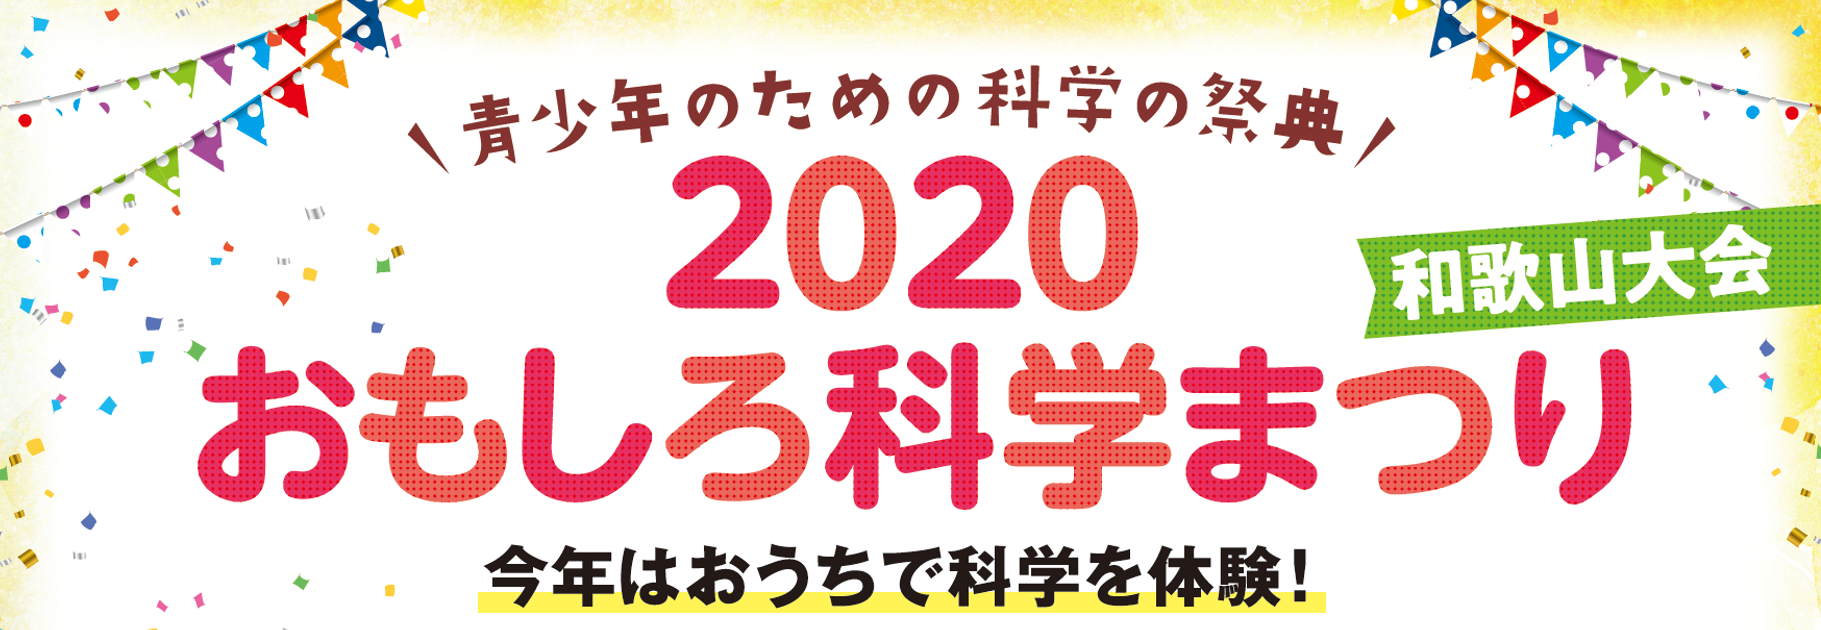 青少年のための科学の祭典 ー 2020 おもしろ科学まつり ー 和歌山大会